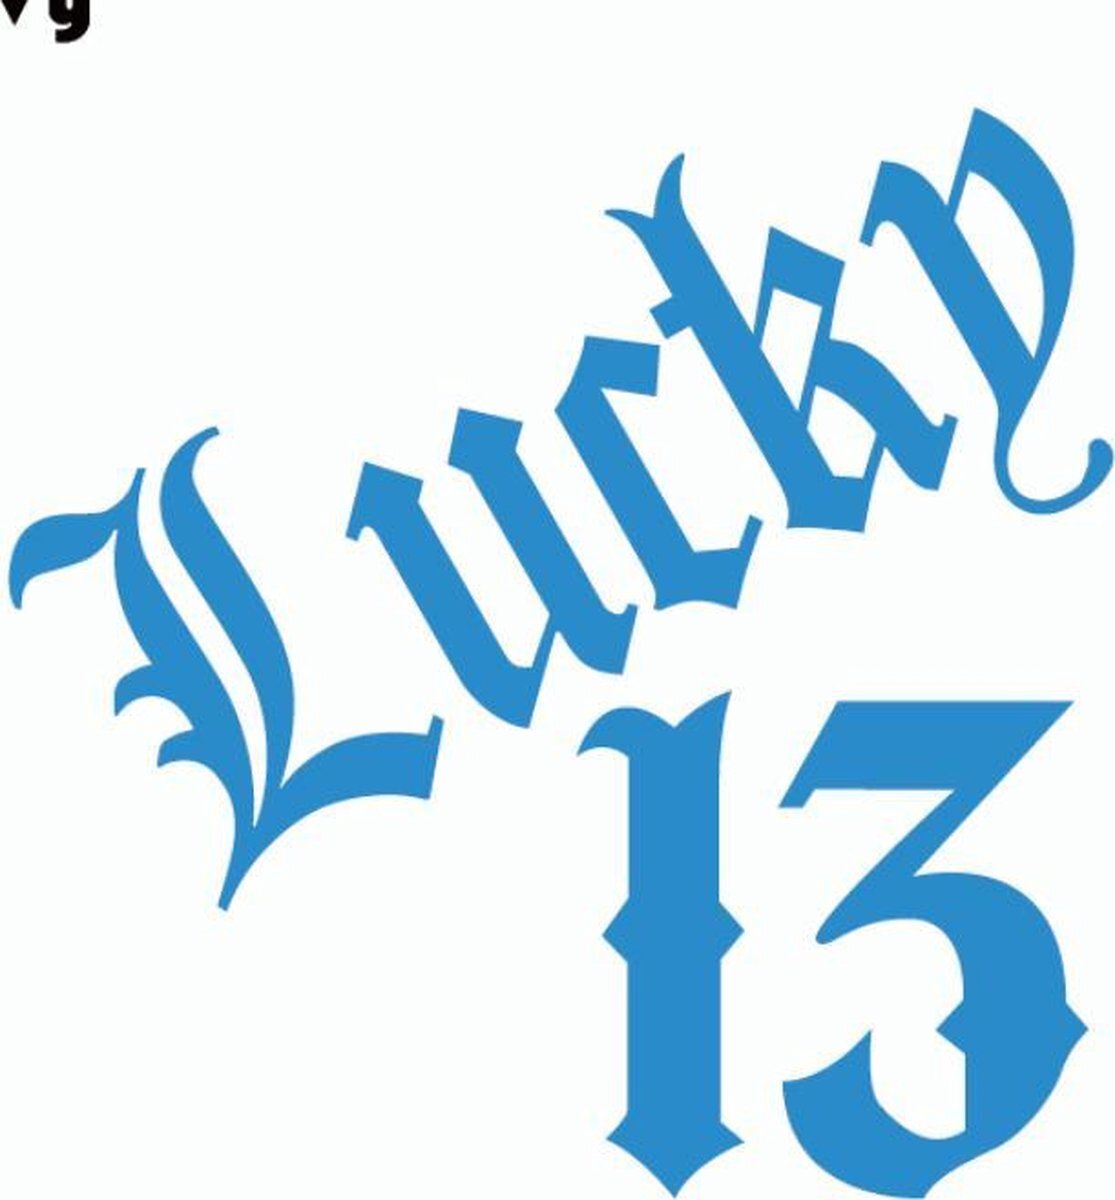 Muurstickers.net Blauwe Lucky 13 autosticker - stikker met ongeluksgetal - maak 13 uw geluksgetal - Lucky13 - 14,8 x 15 cm - aut135